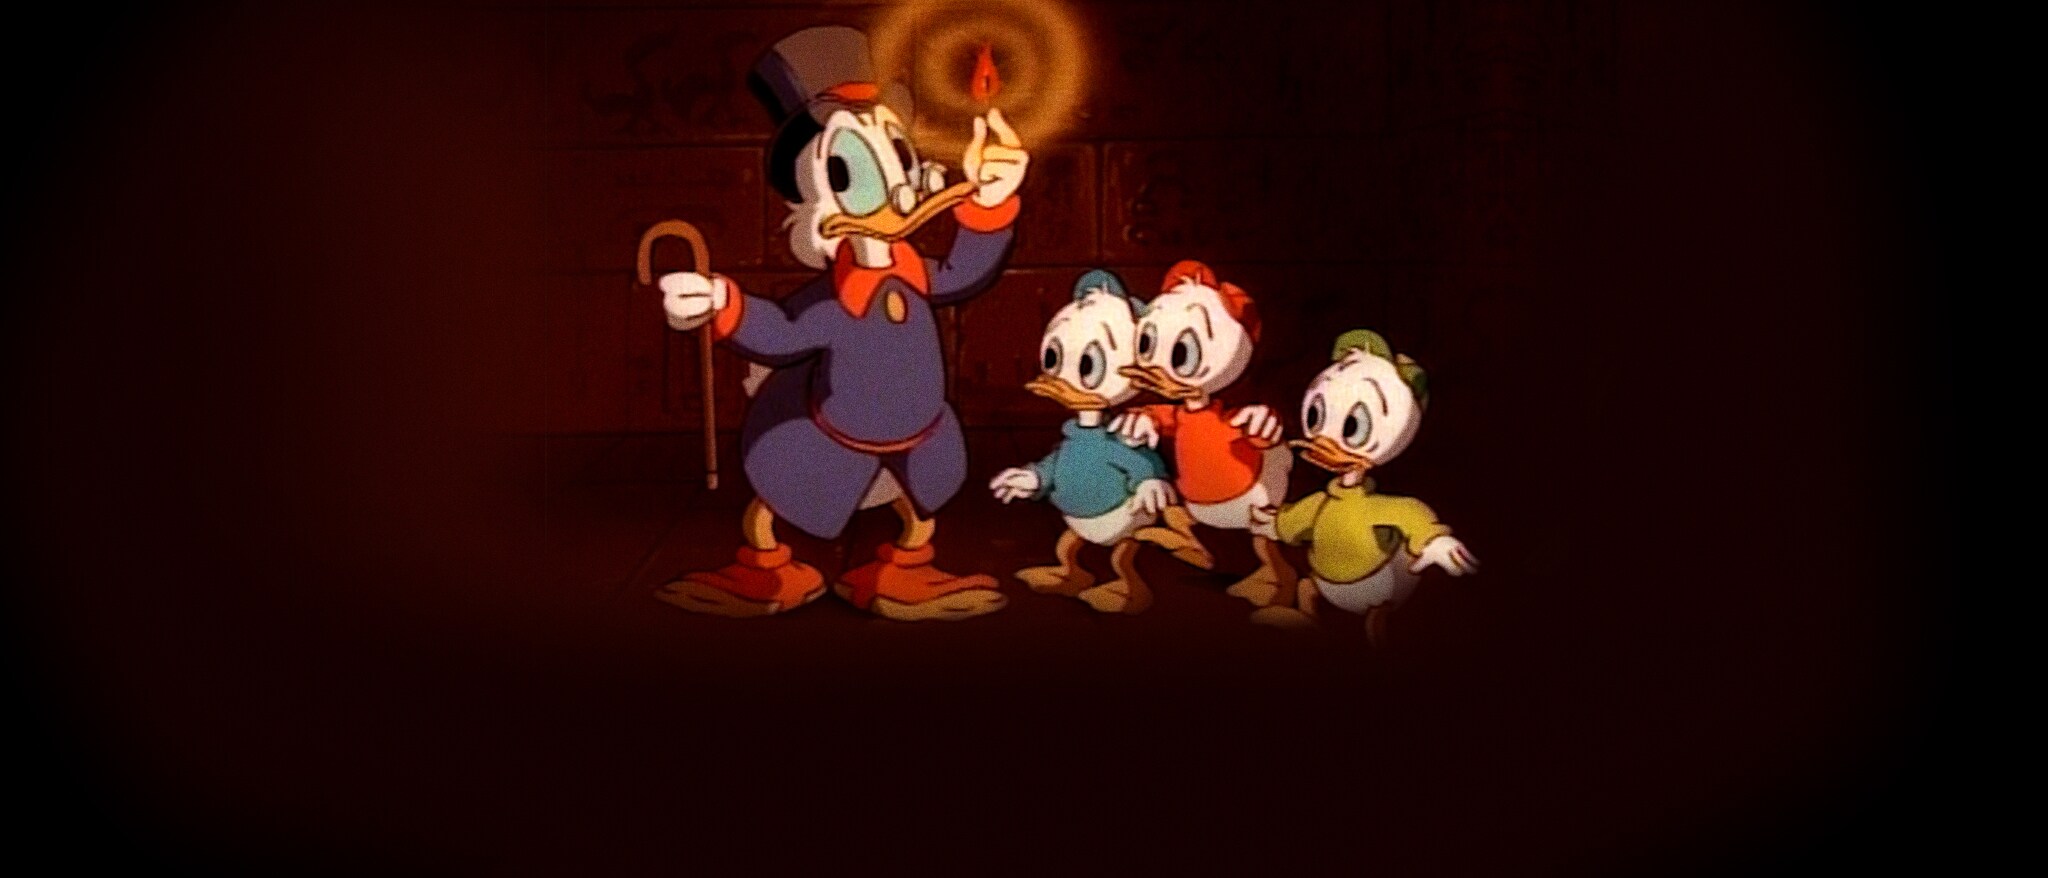 DuckTales (1987) hero